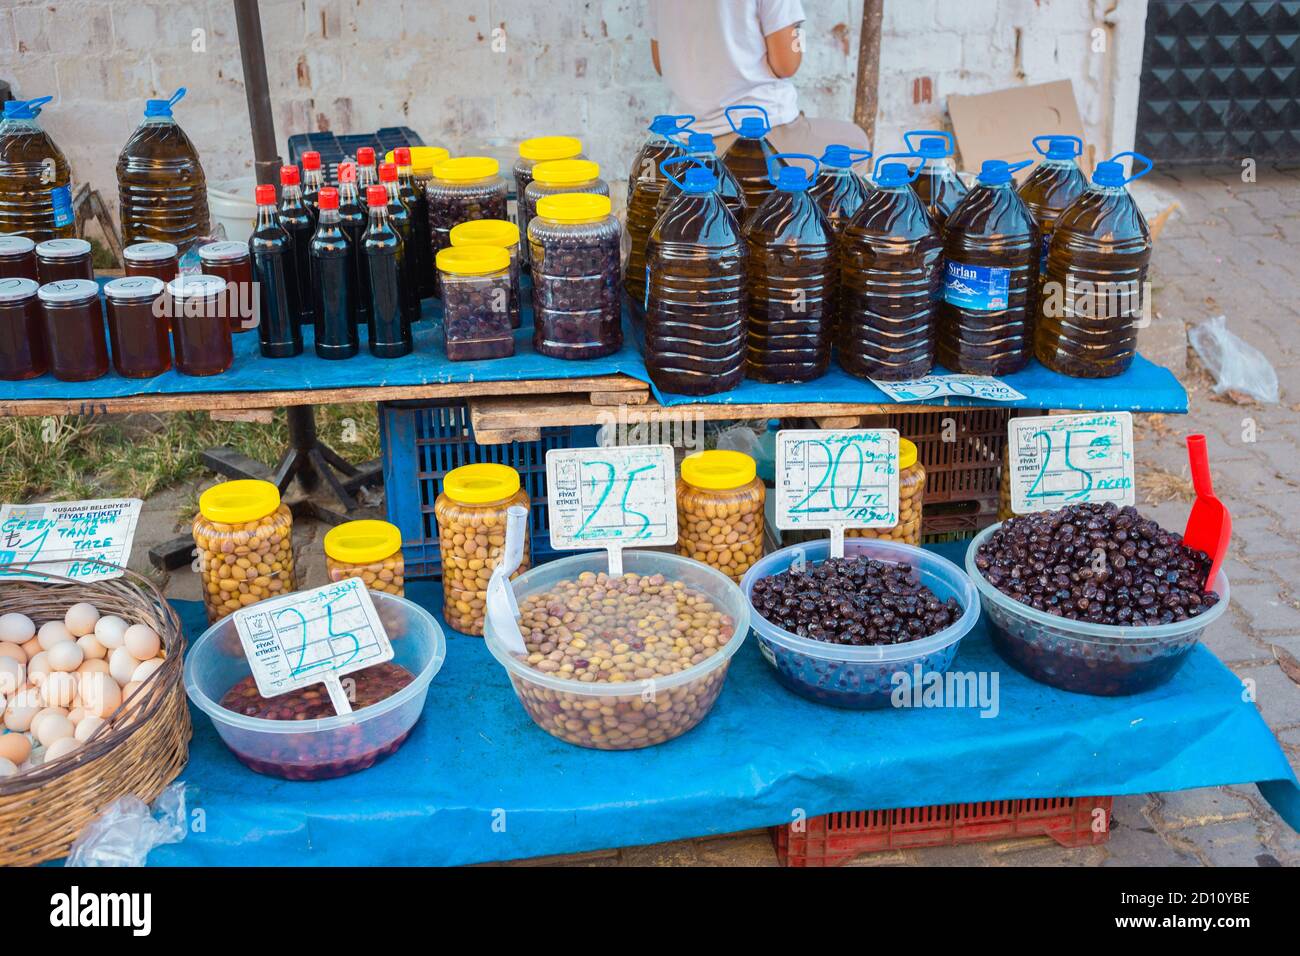 Vente d'olives turques sur le marché local en Turquie. Olives vertes et noires marinées. Banque D'Images